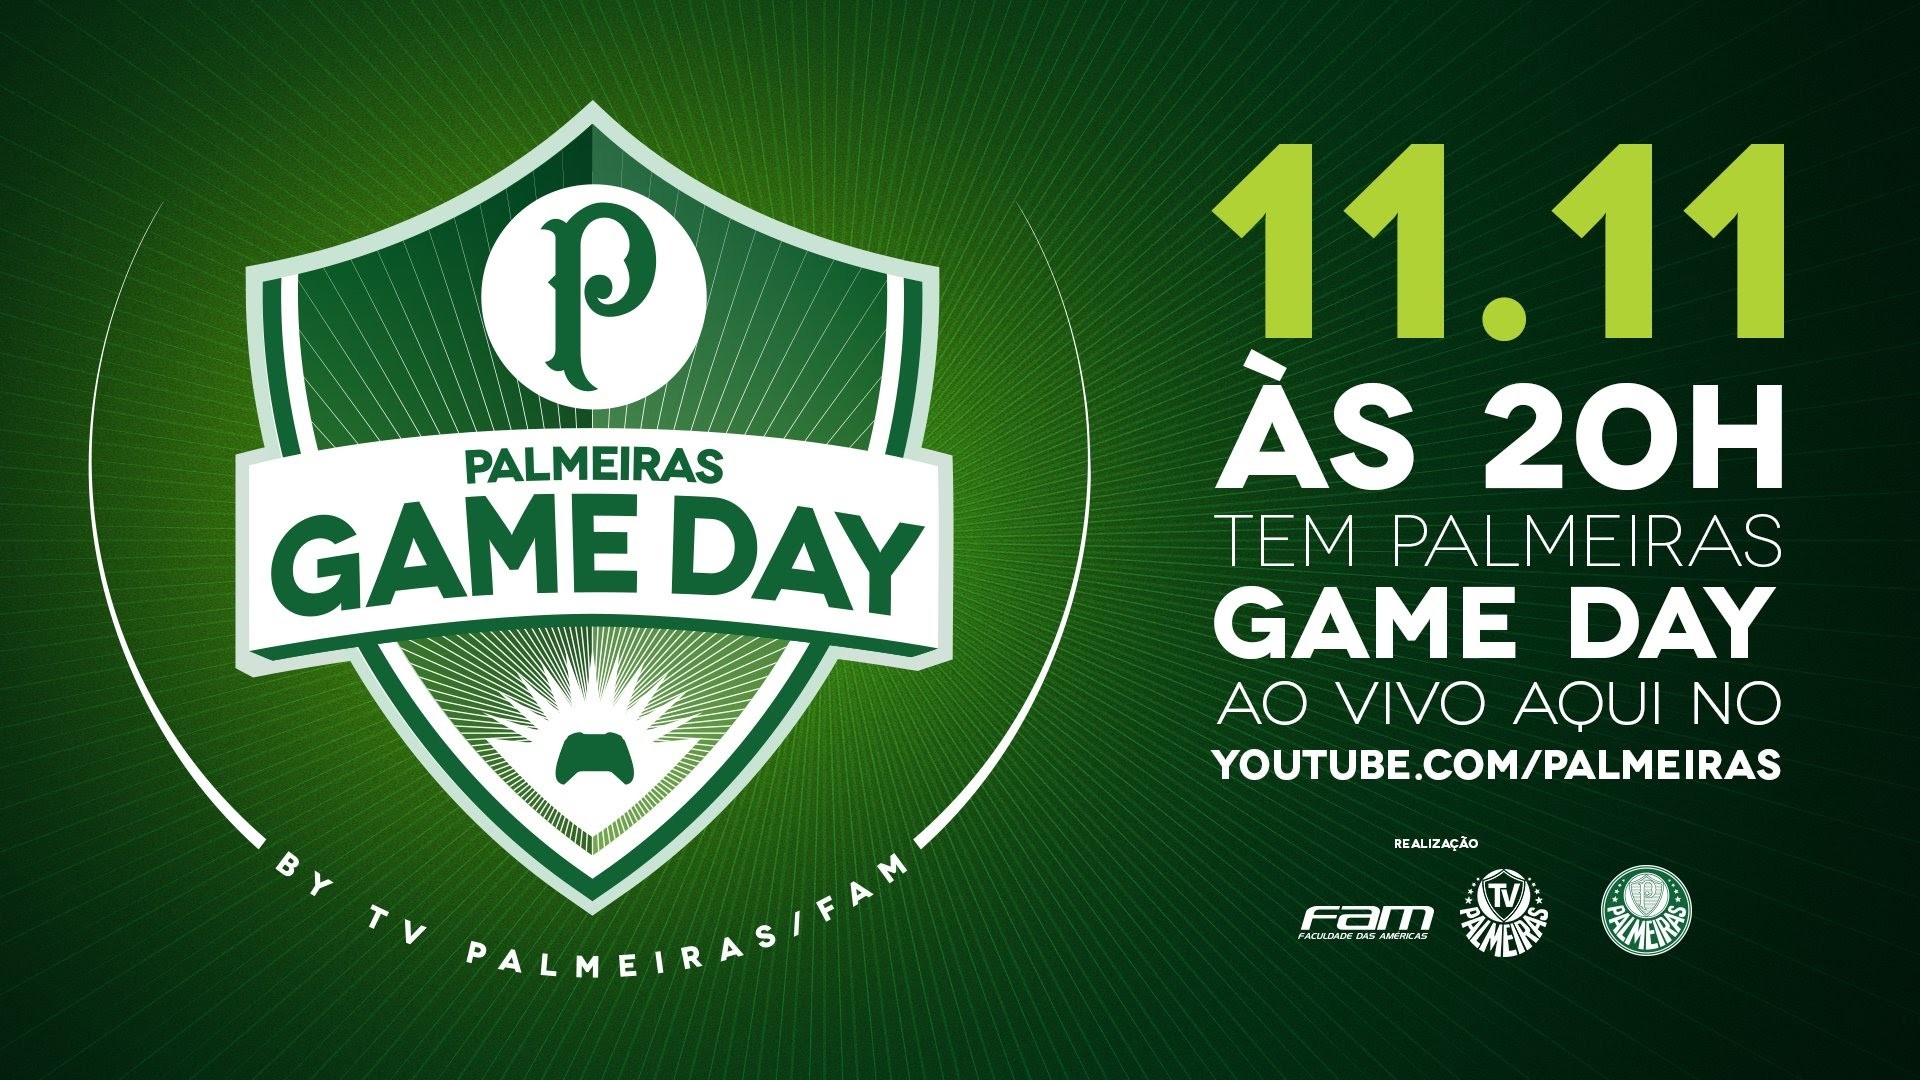 1920x1080 AO VIVO - Palmeiras Game Day hoje, Ã s 20h, aqui na TV Palmeiras - YouTube